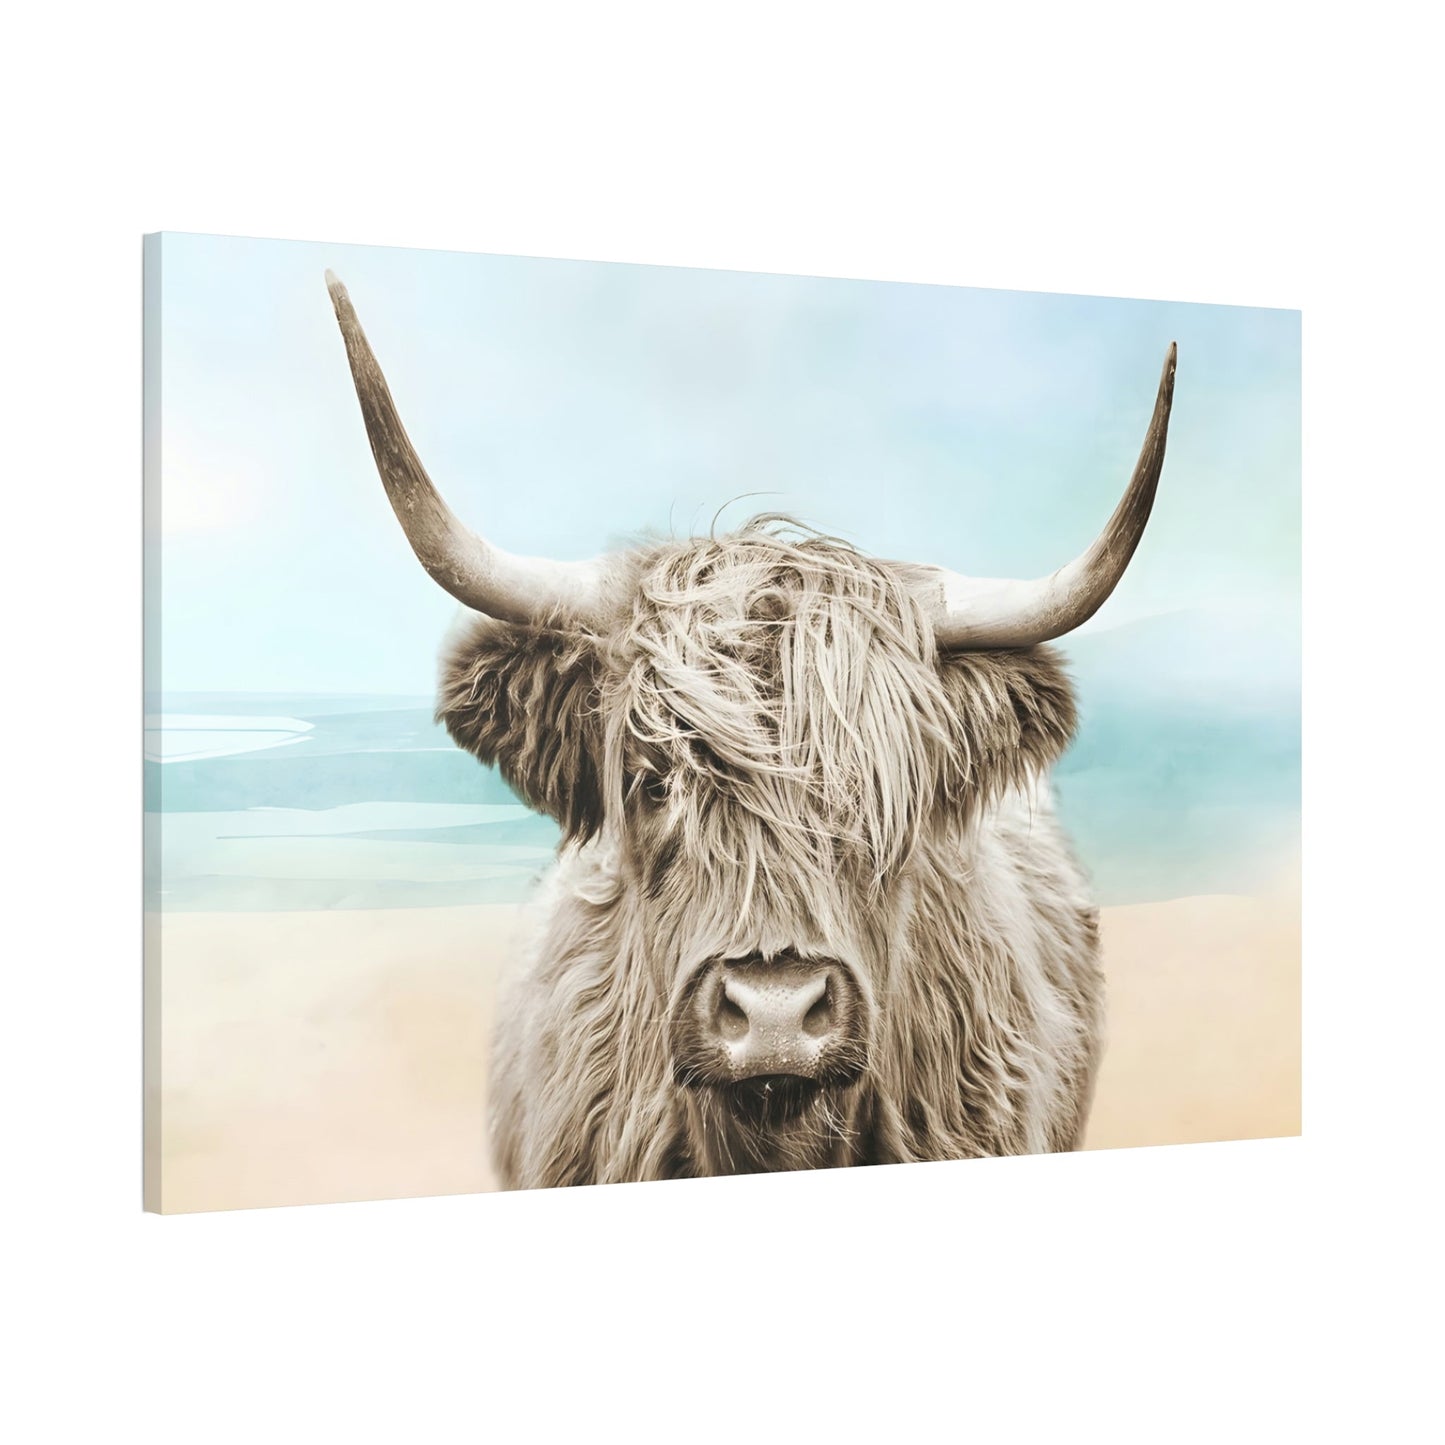 Framed in Wonder: Framed Poster of a Stunning Highland Cow Portrait